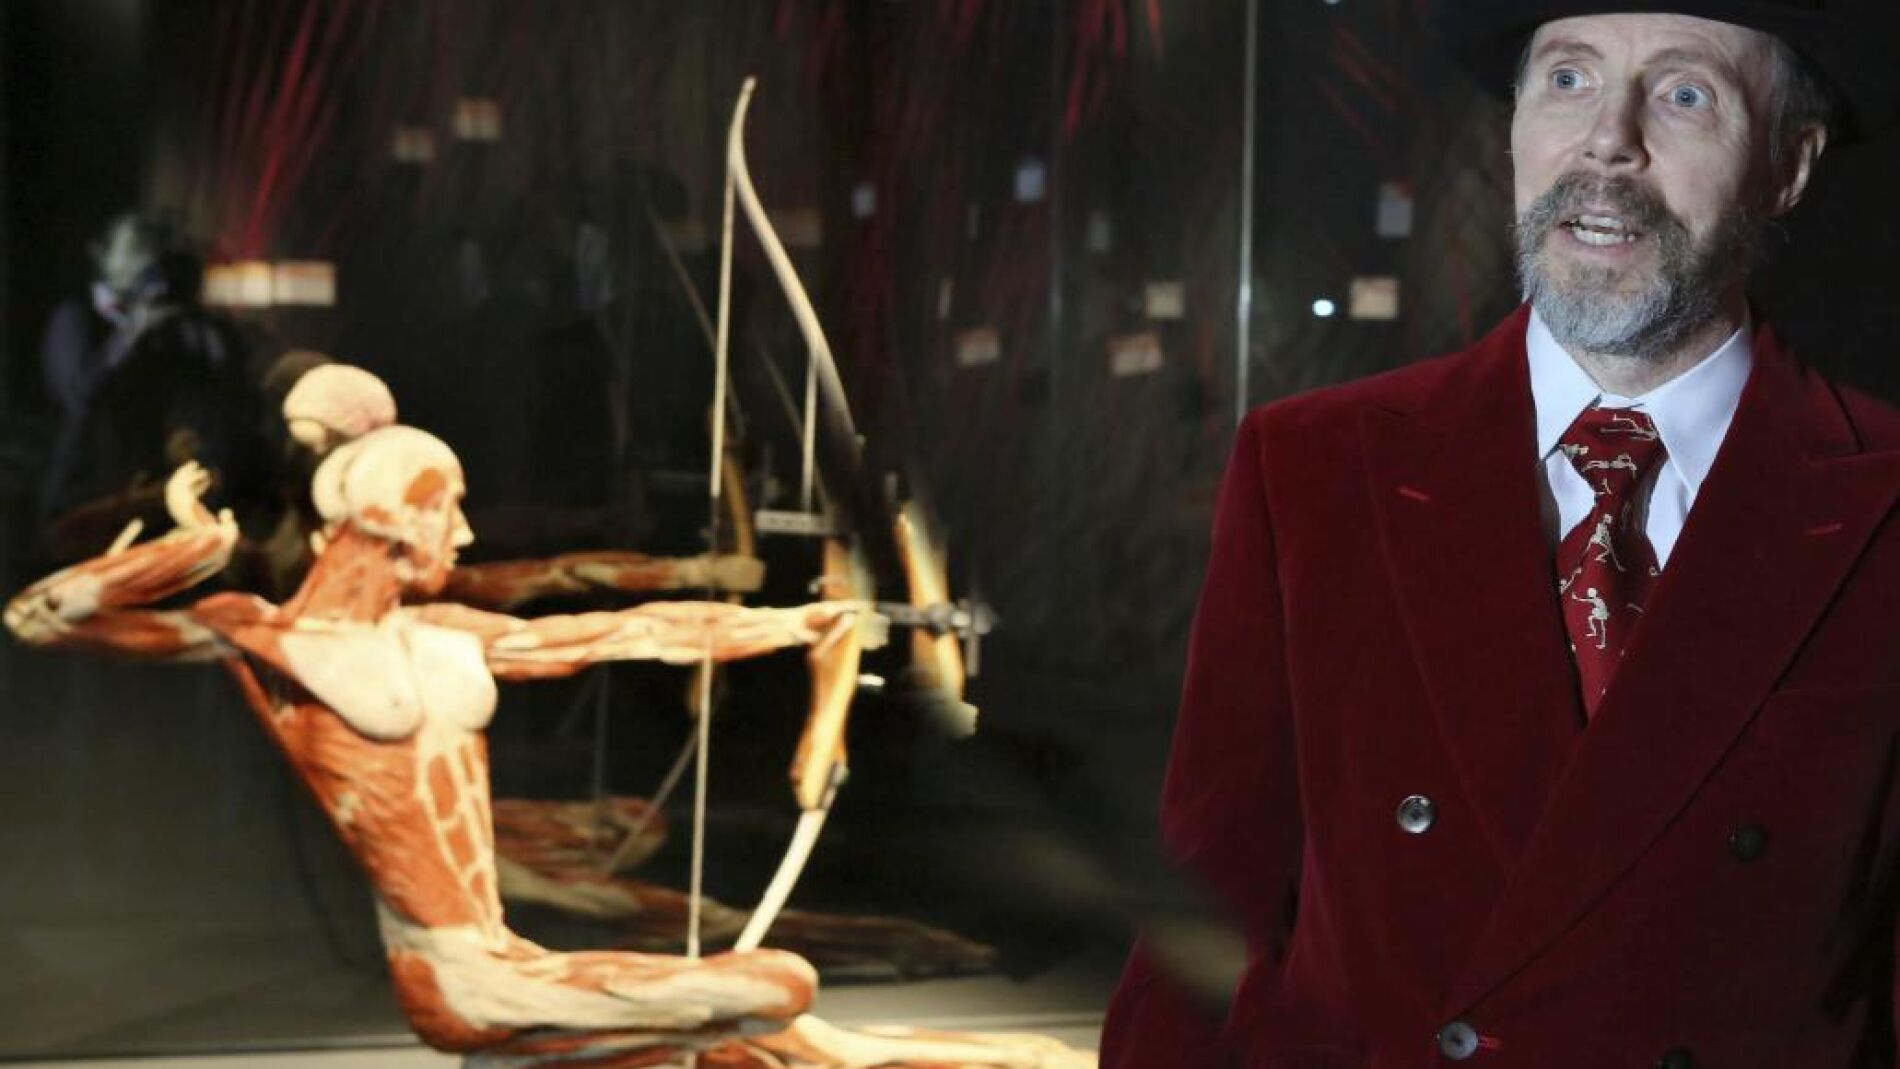 El polémico «Doctor muerte» tiene su primer museo permanente en Berlín imagen